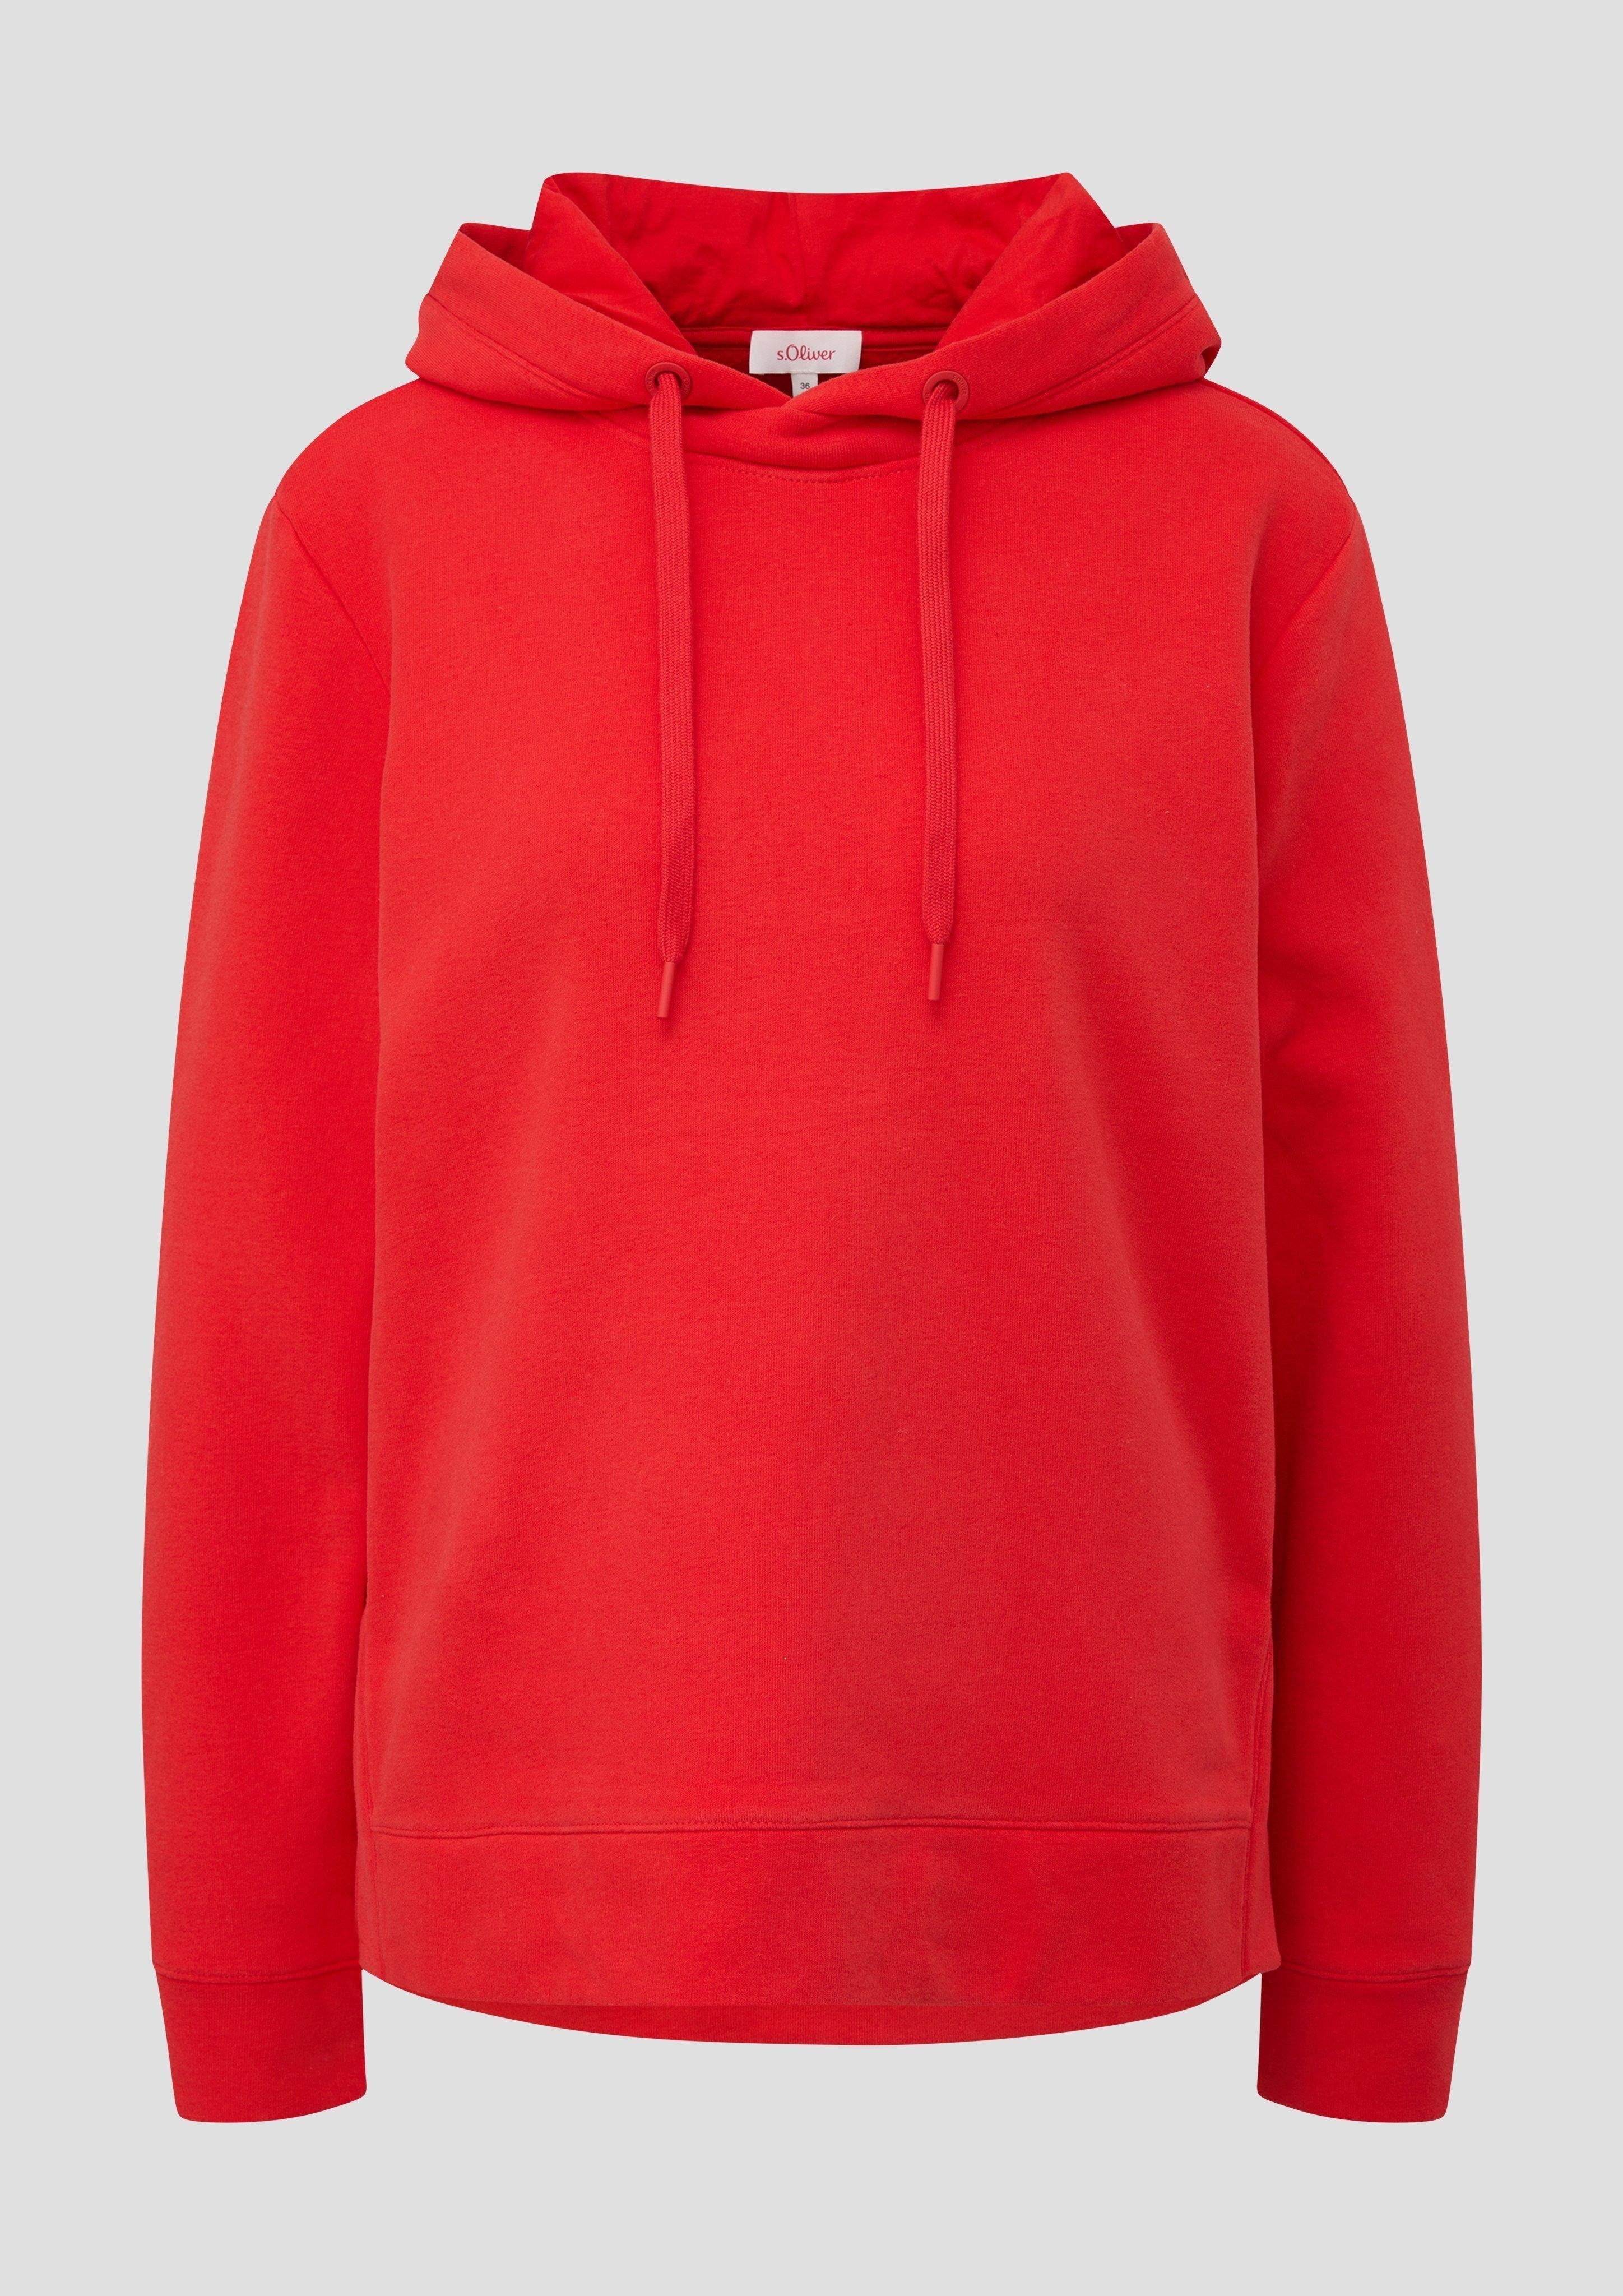 Durchzugkordel aus s.Oliver Kapuzen-Sweatshirt Sweatshirt Baumwollmix rot